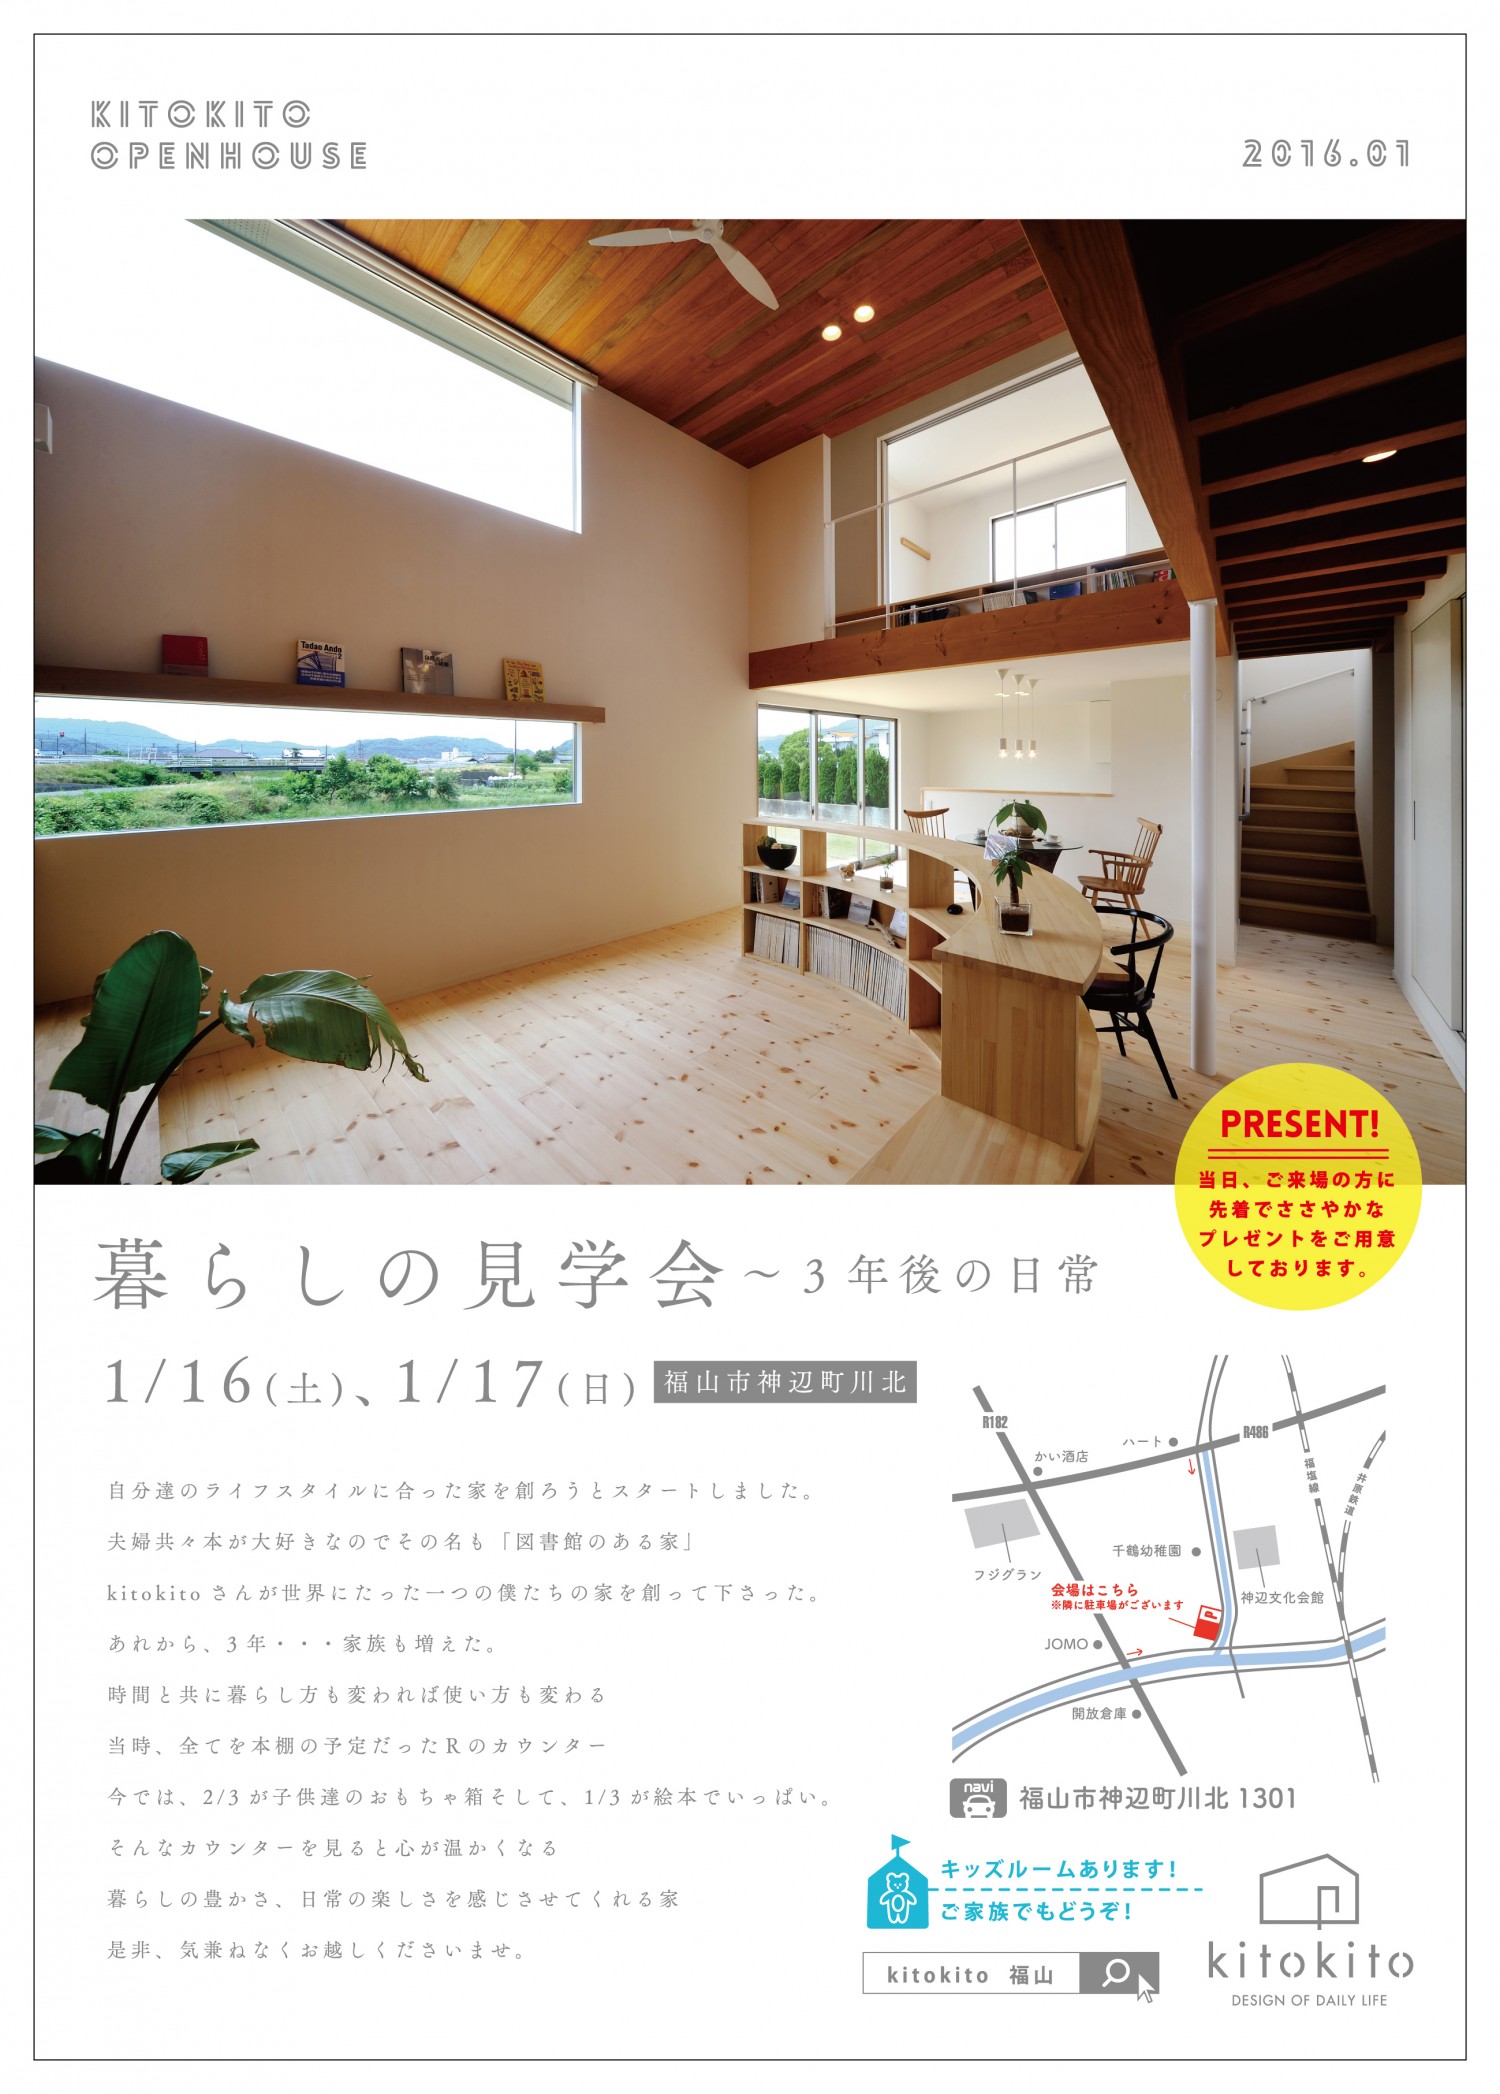 kitokitoオープンハウス1601-01